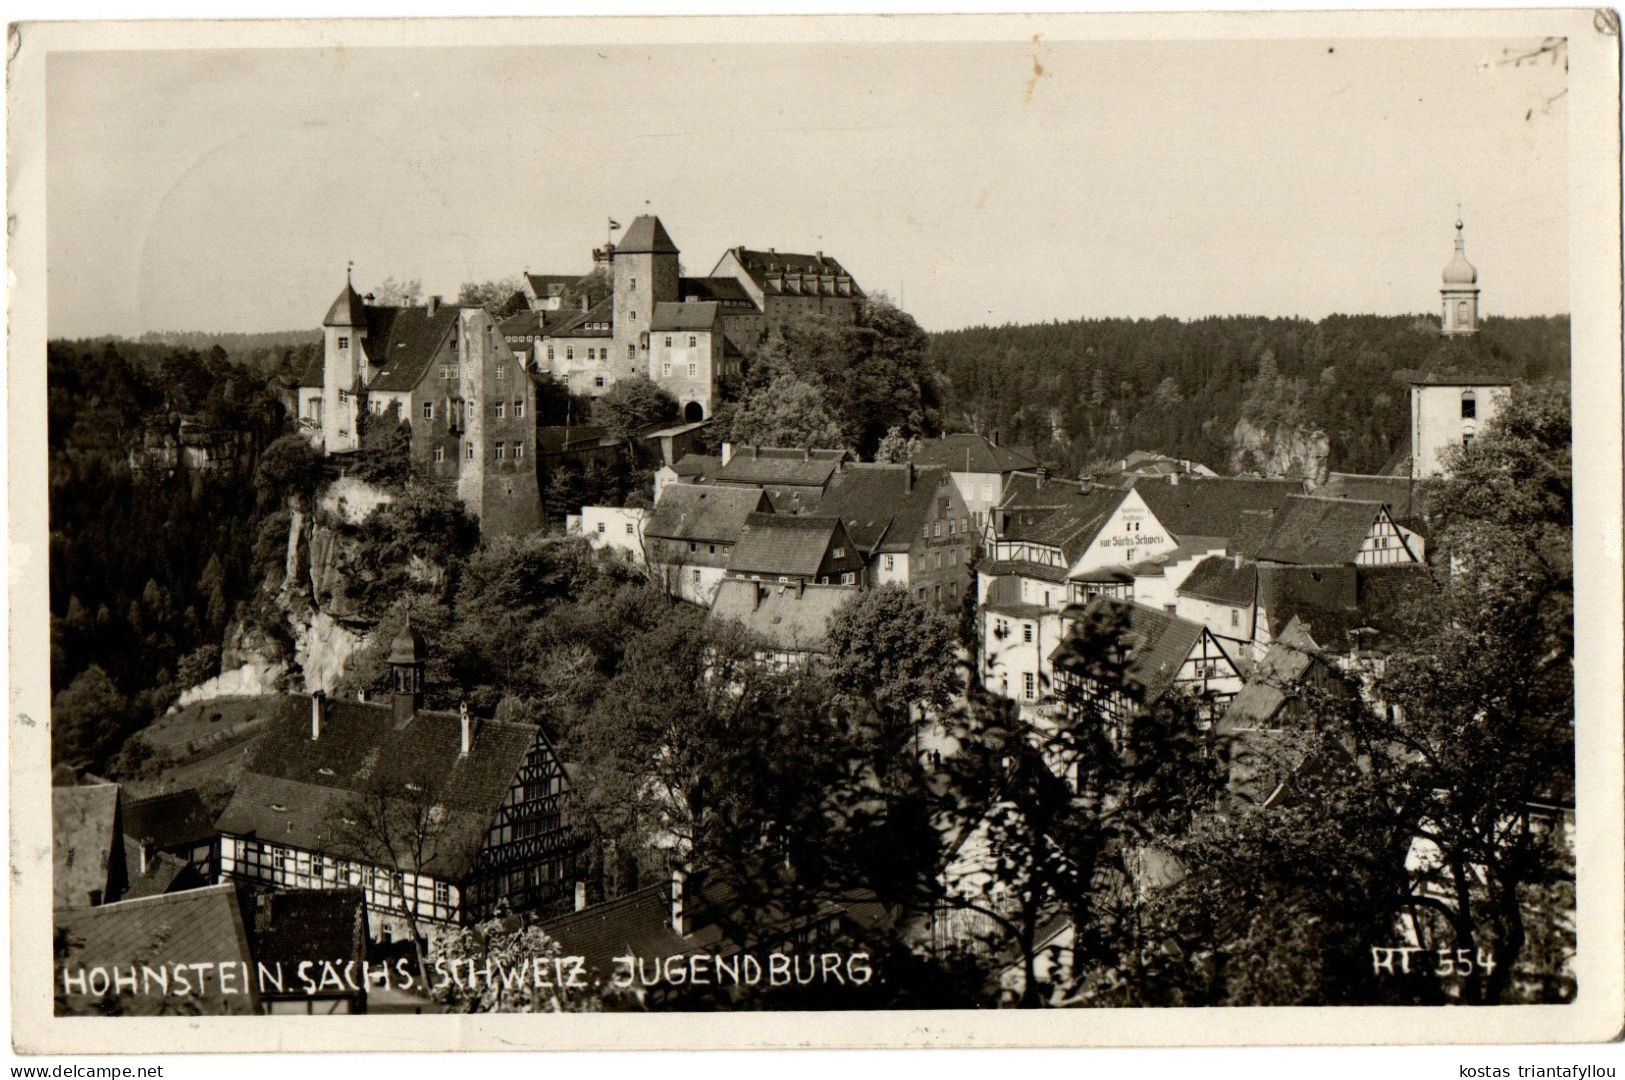 1.12.25 GERMANY, HOHNSTEIN, JUGENDBURG, PHOTOGRAPH, 1937, POSTCARD - Hohnstein (Saechs. Schweiz)